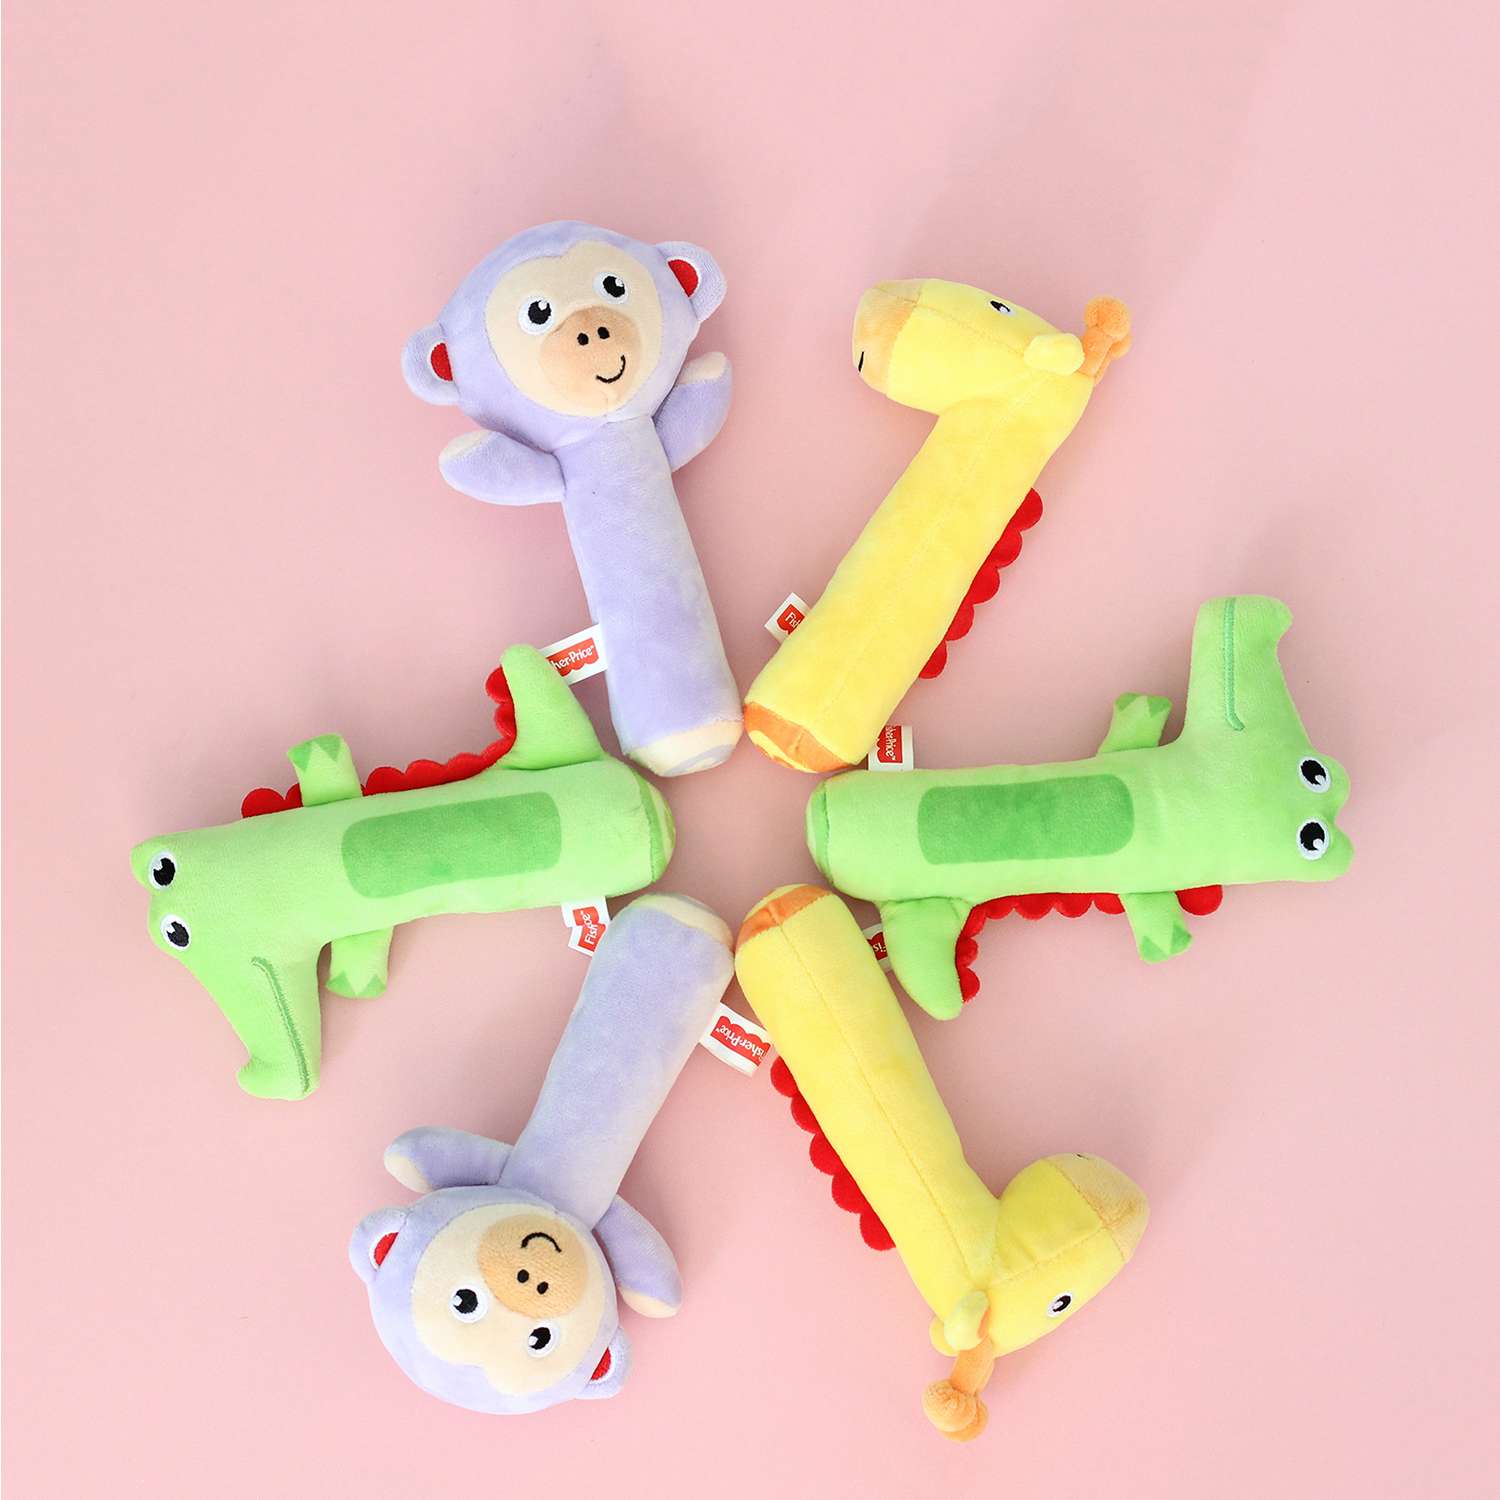 Погремушка-пищалка Fisher Price Жирафик развивающая мягкая игрушка для детей 0+ - фото 5